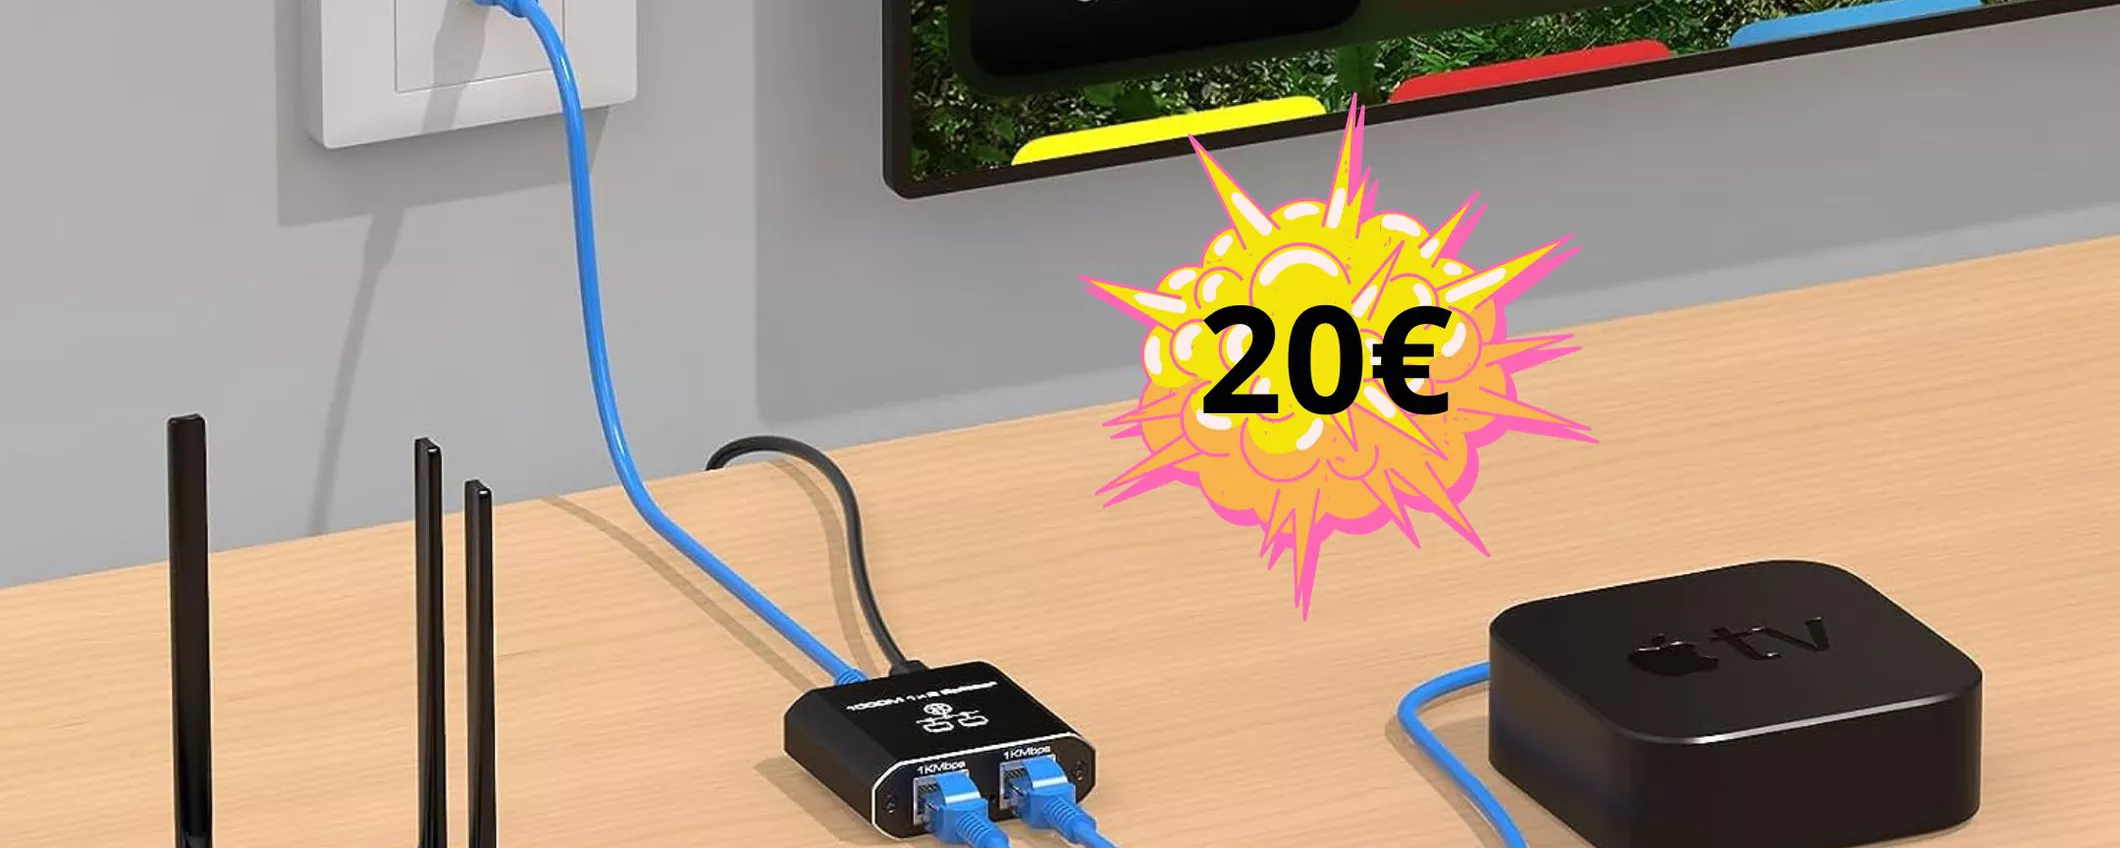 Utilissimo Switch Ethernet con 2 Porte LAN a soli 20 euro! Approfittane subito